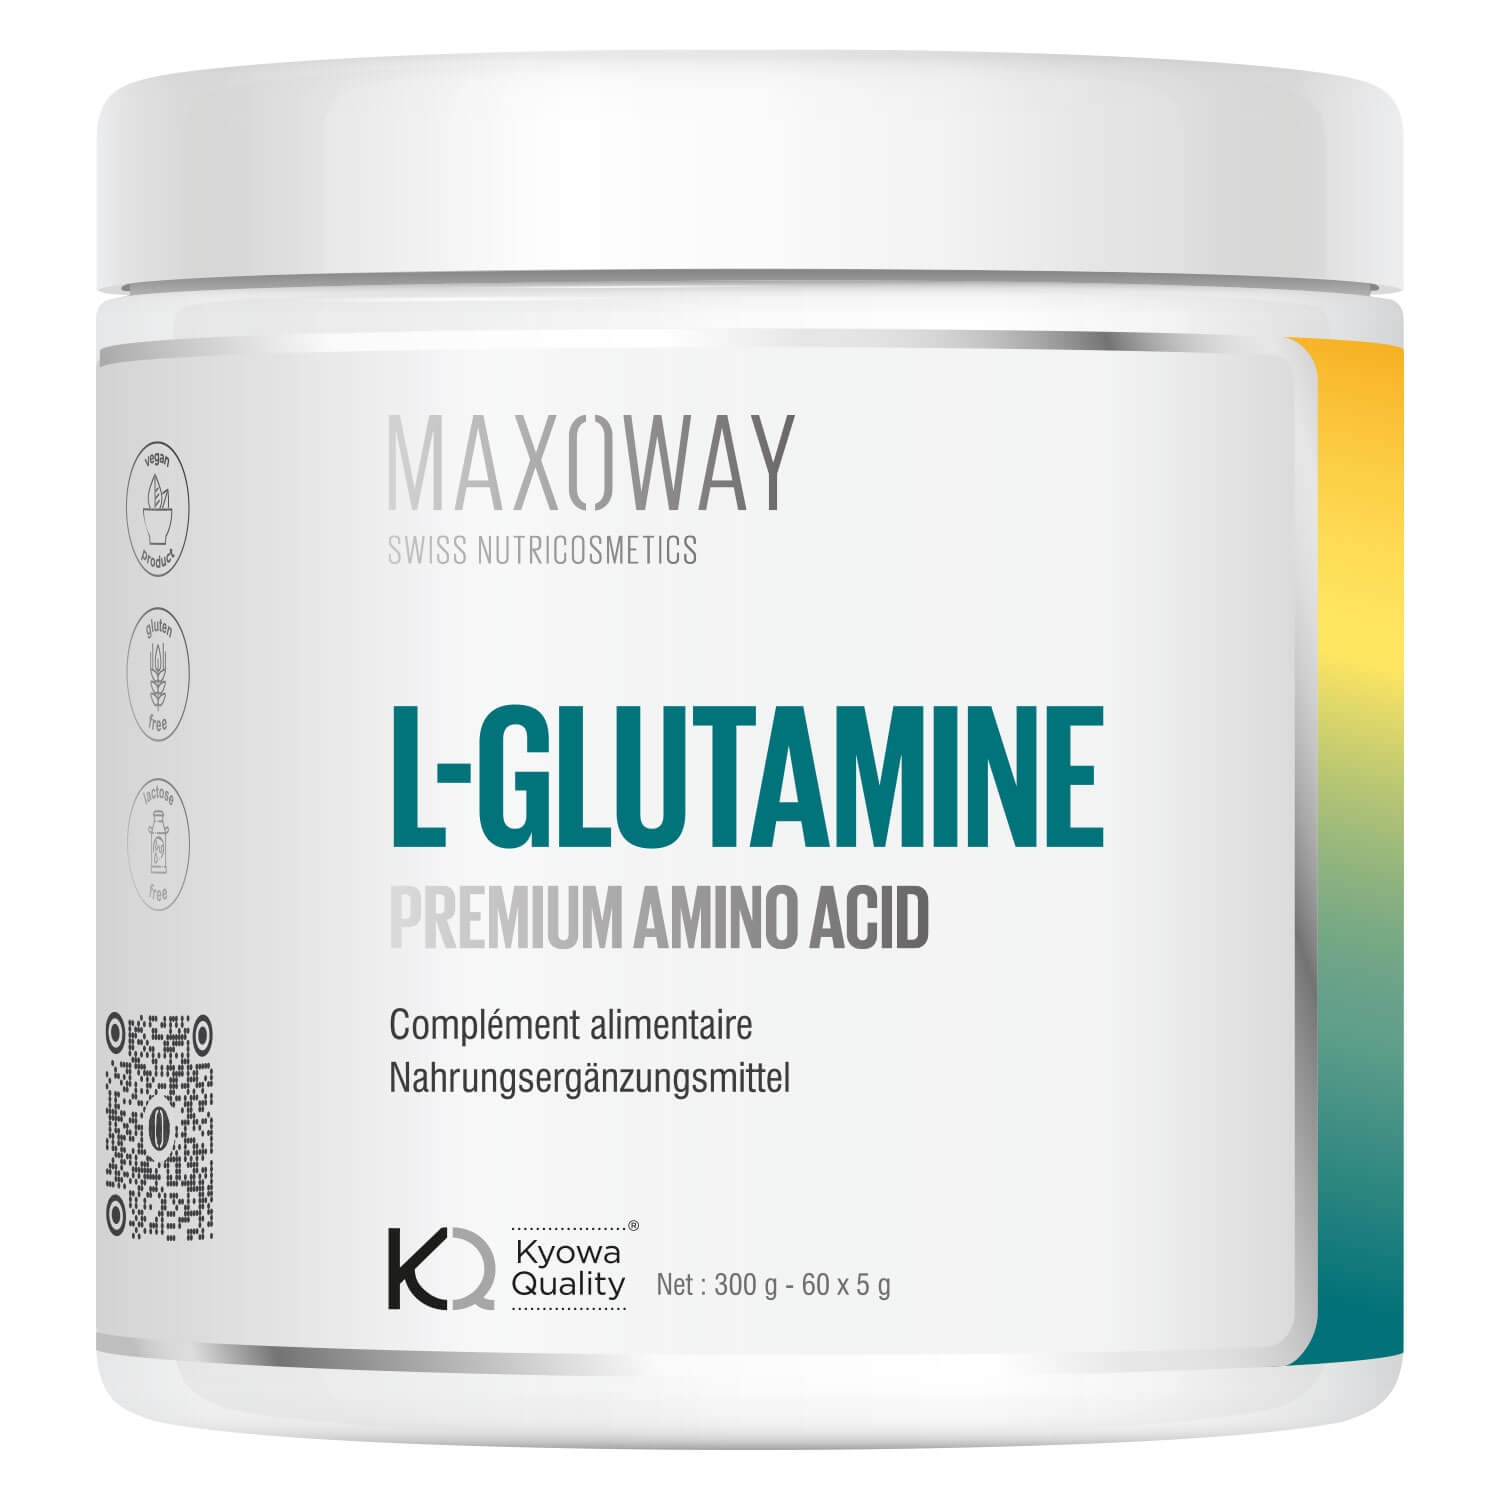 Produktbild von Maxoway - L-Glutamine